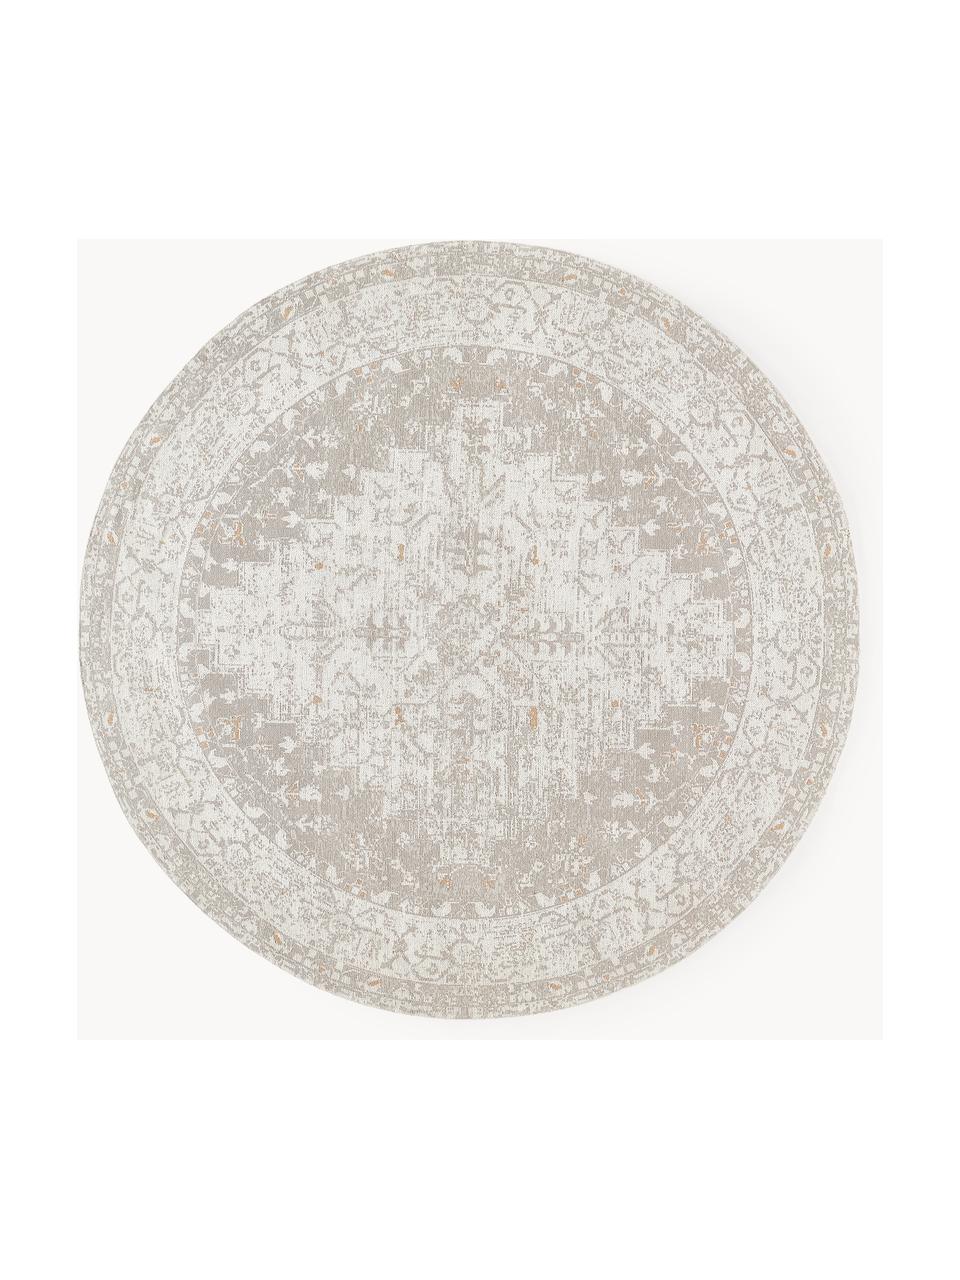 Kulatý žinylkový koberec Neapel, ručně tkaný, Šedomodrá, krémově bílá, Ø 250 cm (velikost XL)